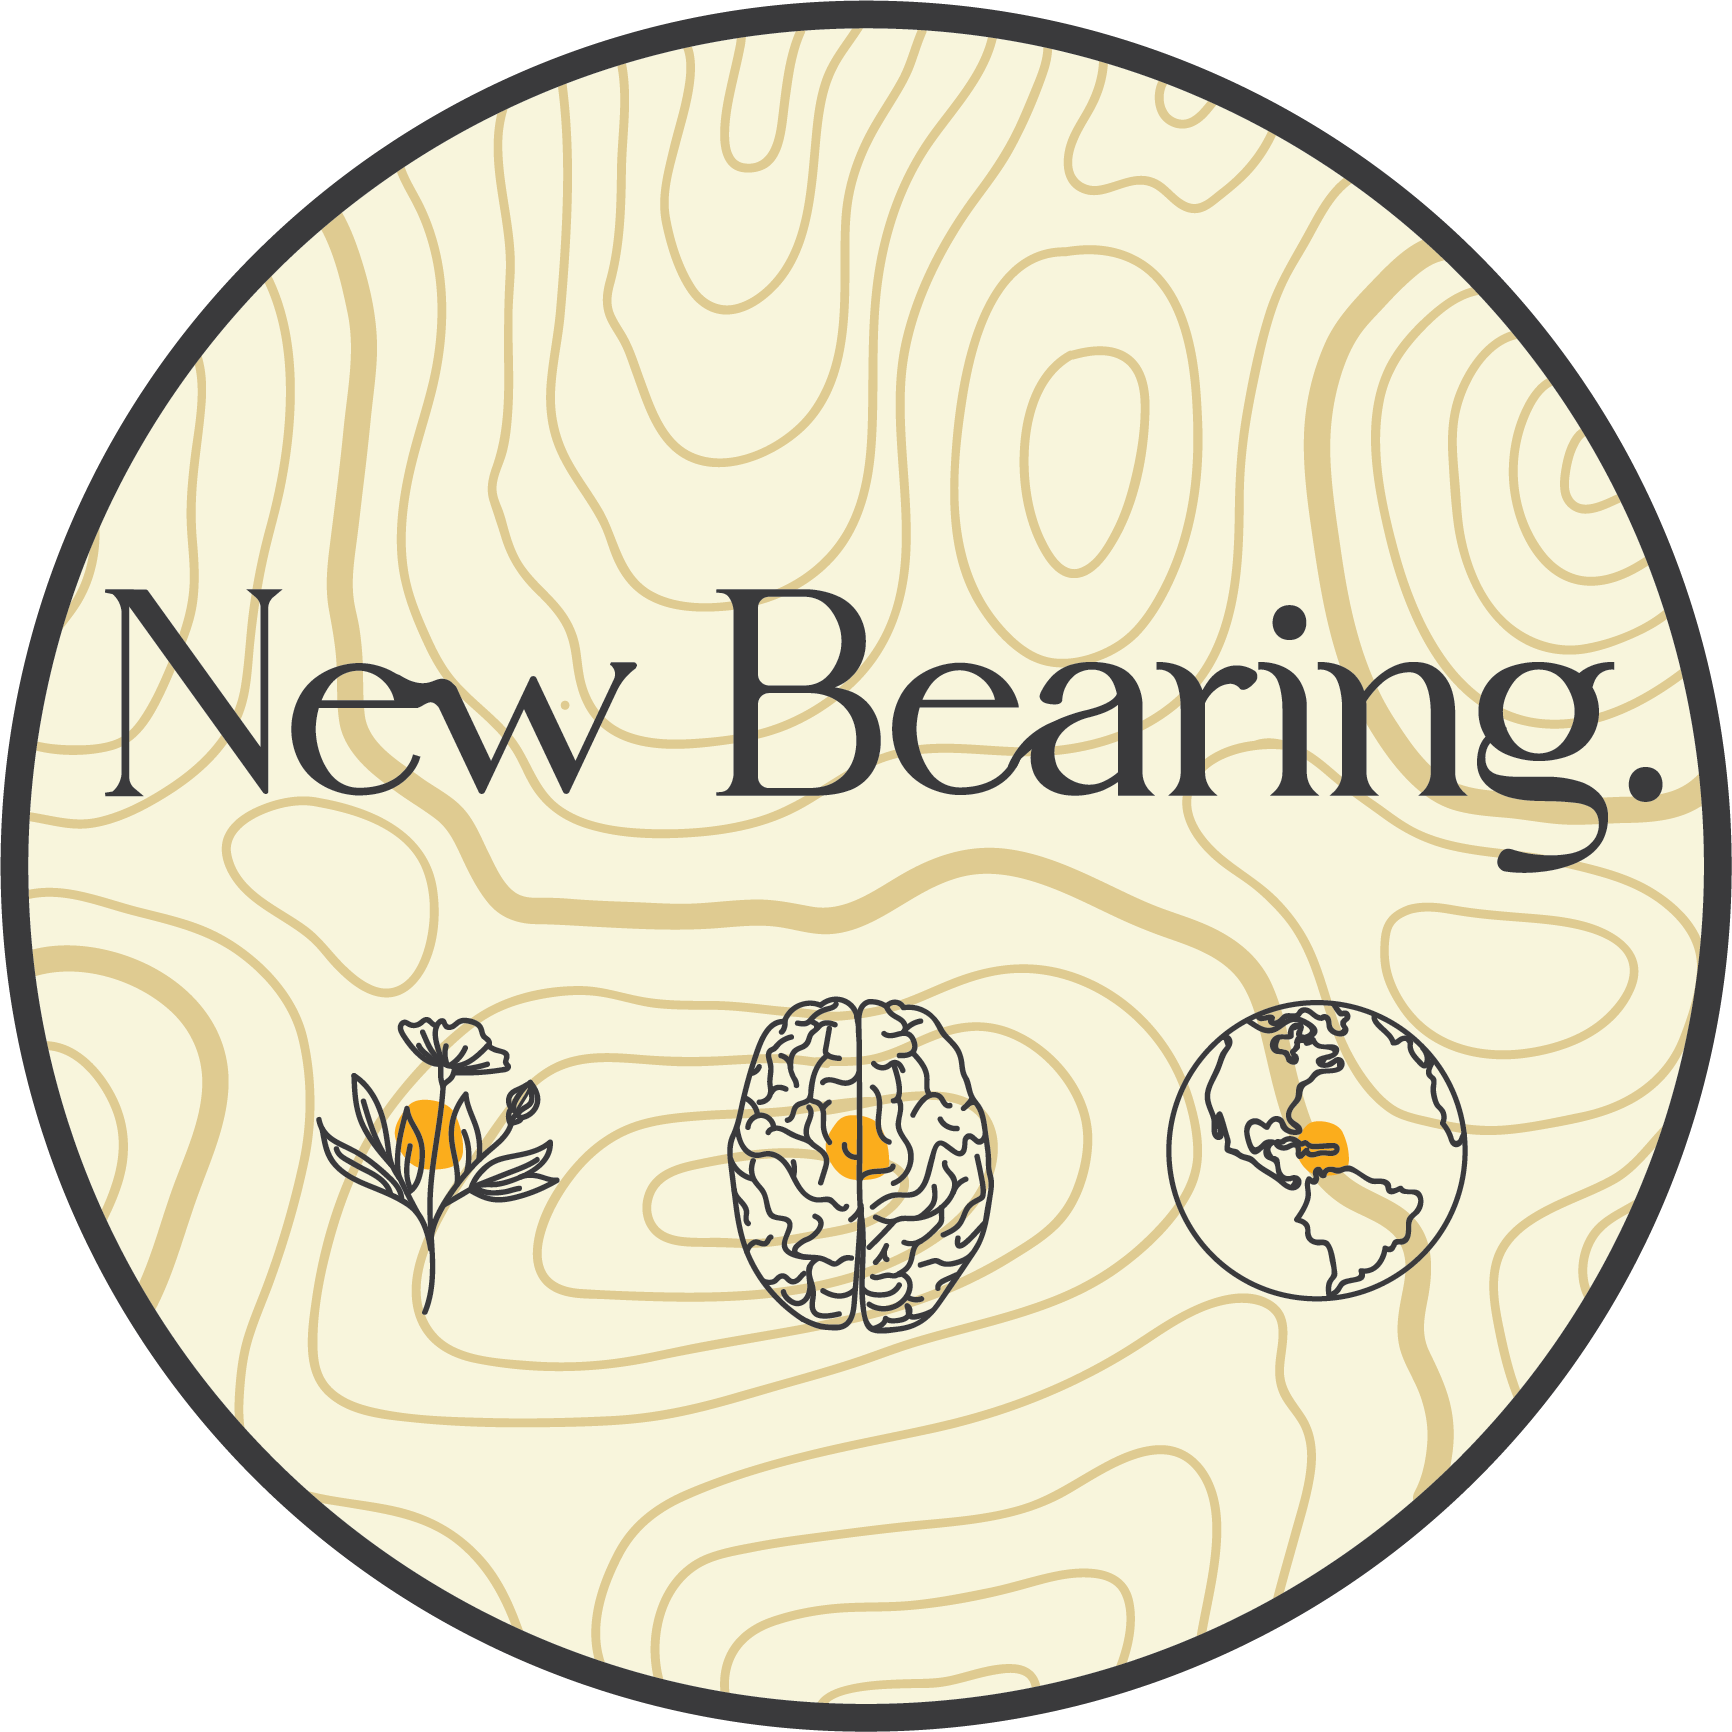 New Bearing logo